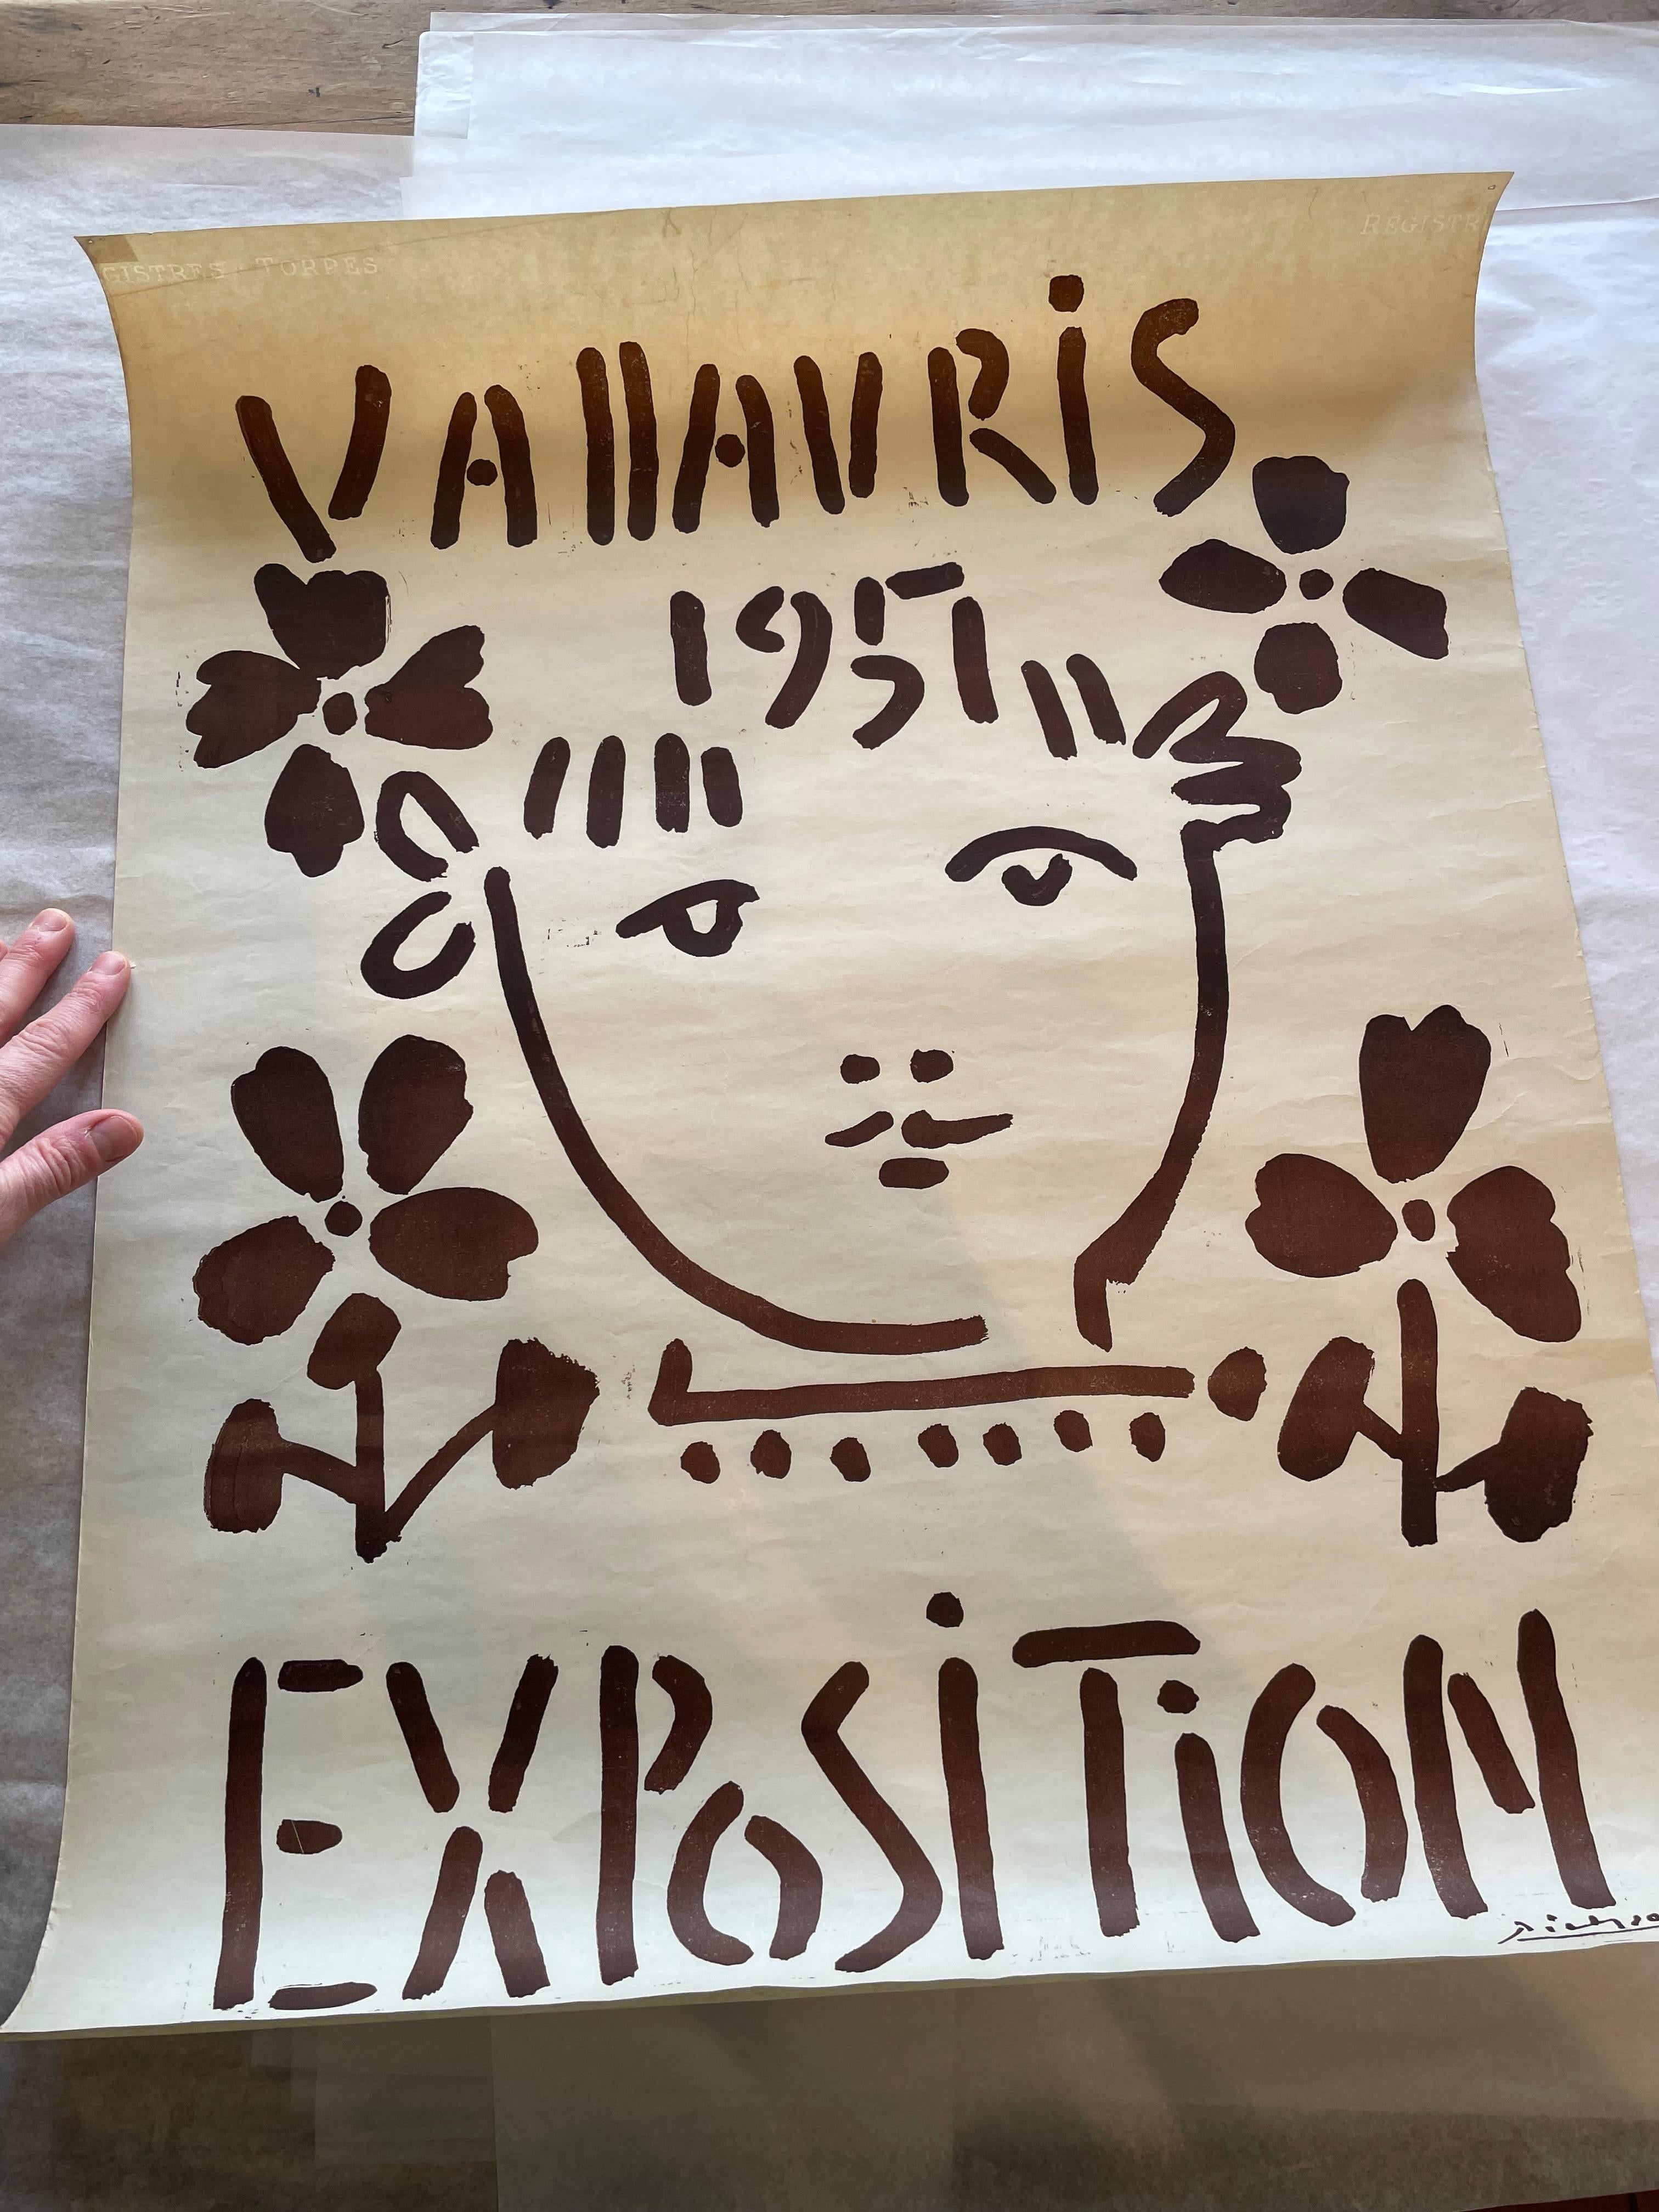 Artiste : Pablo Picasso

Titre : Exposition de Vallauris 1951, 1951

Date : 1951

Médium : Linogravure

Imprimeur : Hidalgo Arnera

Taille : 65 x 50 cm

Signé : Dans la plaque.